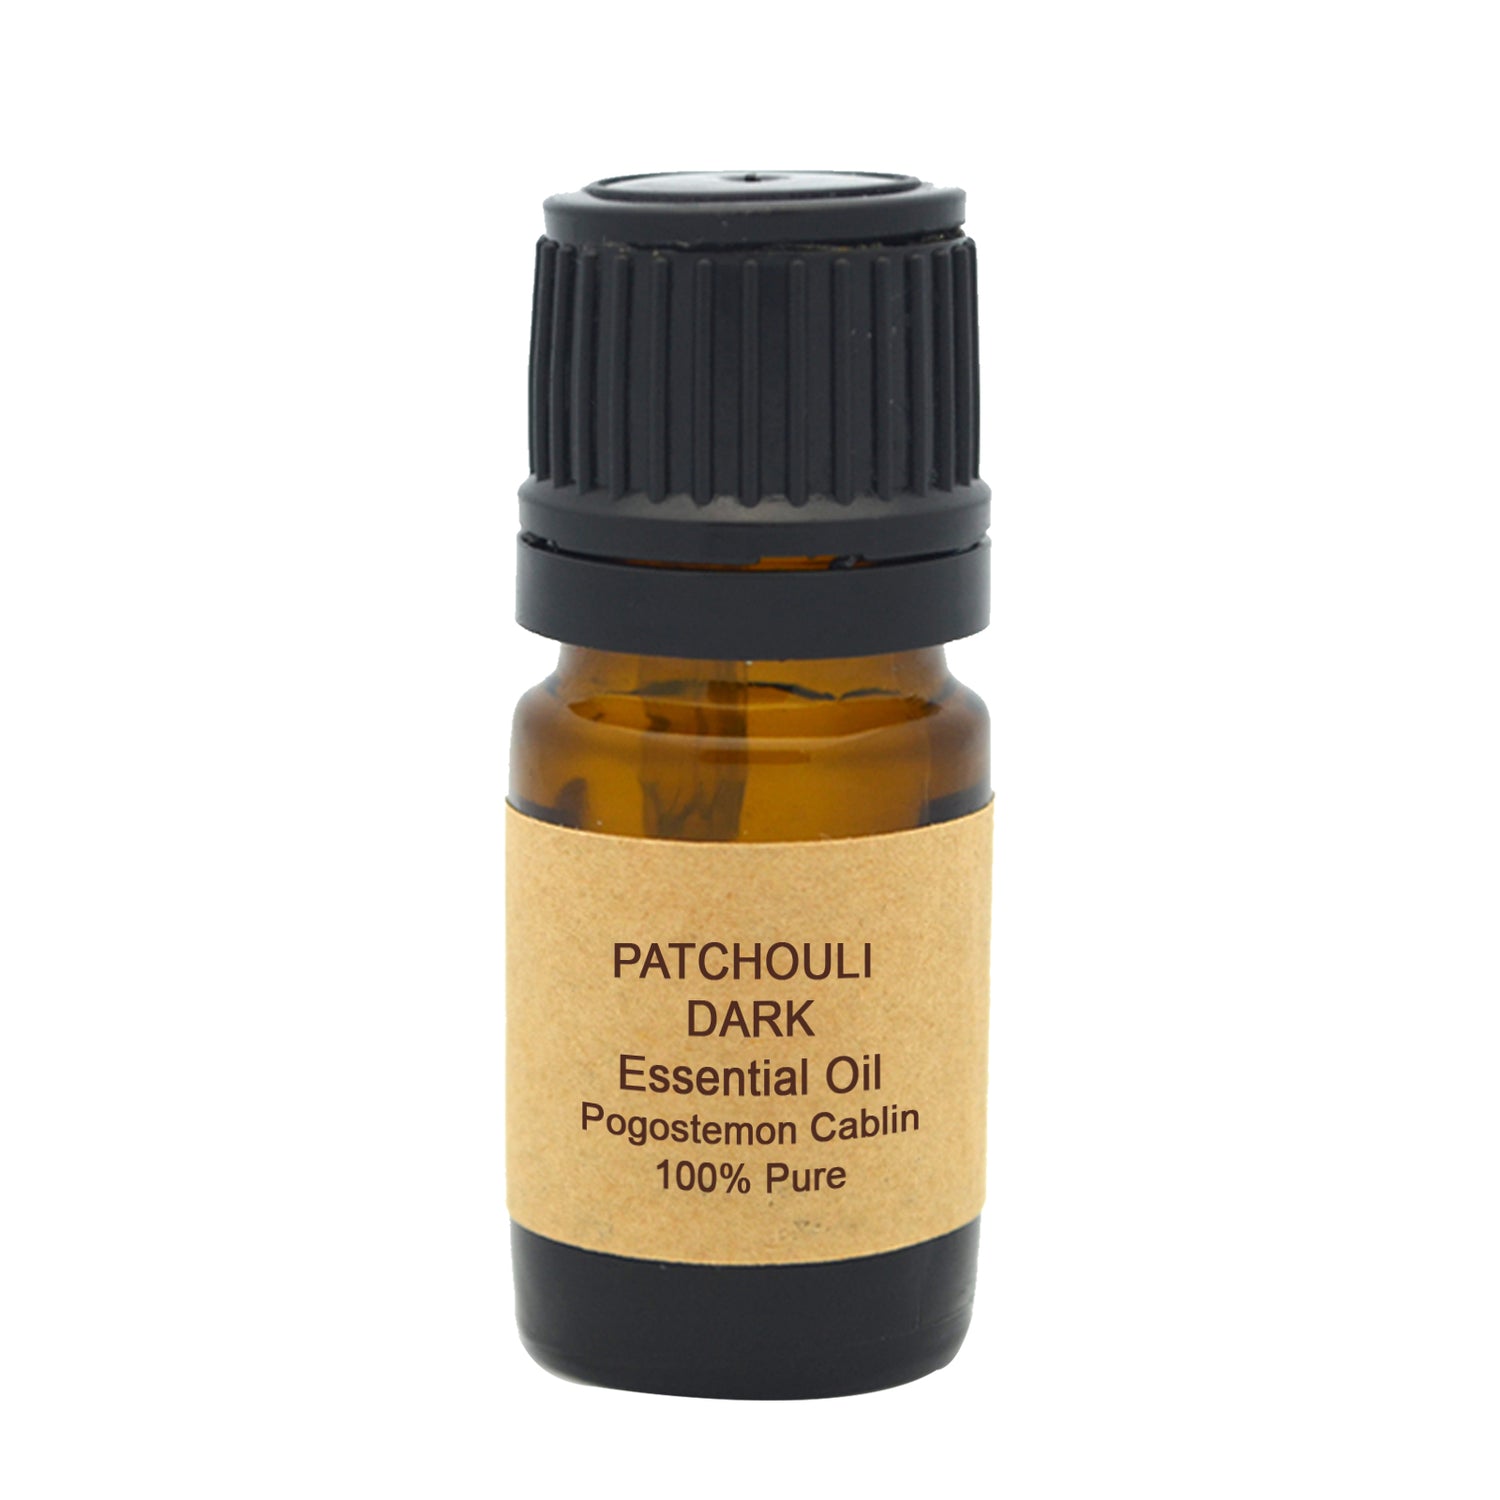 Patchouli Essential Oil (Dark)